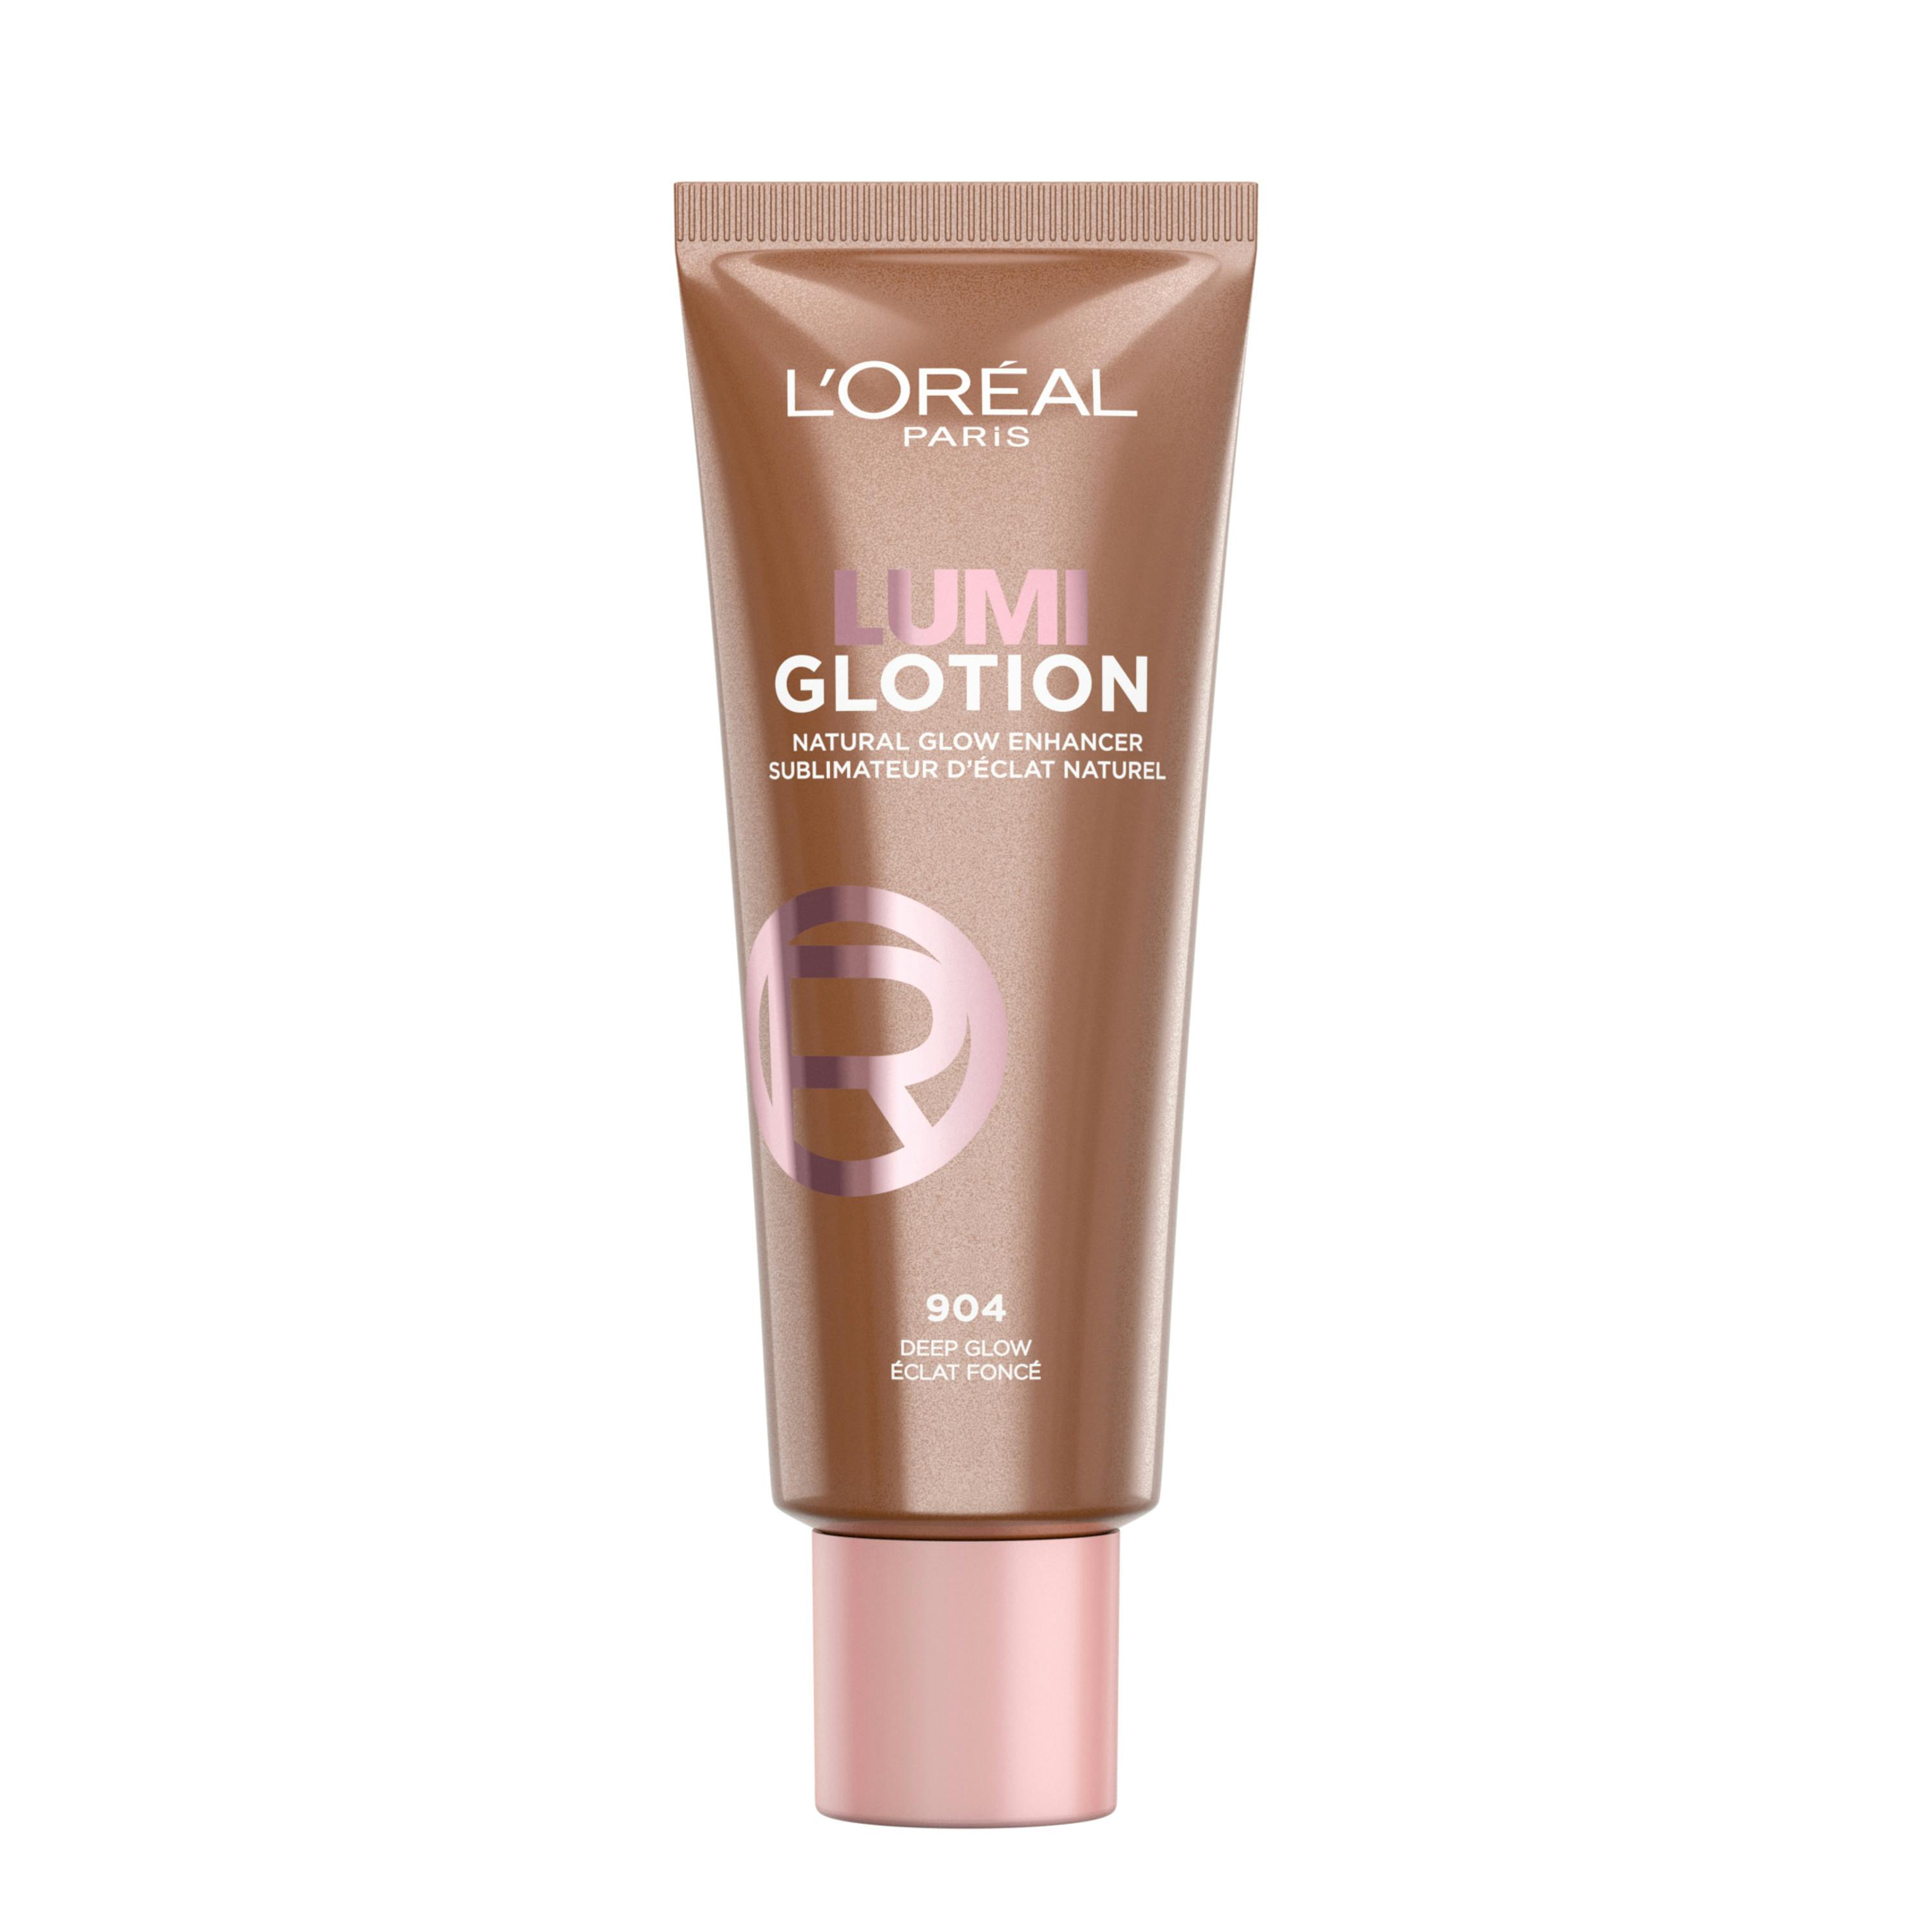 L'Oréal Paris Lumi Glotion Highlighter 904 Deep Glow 40 ml